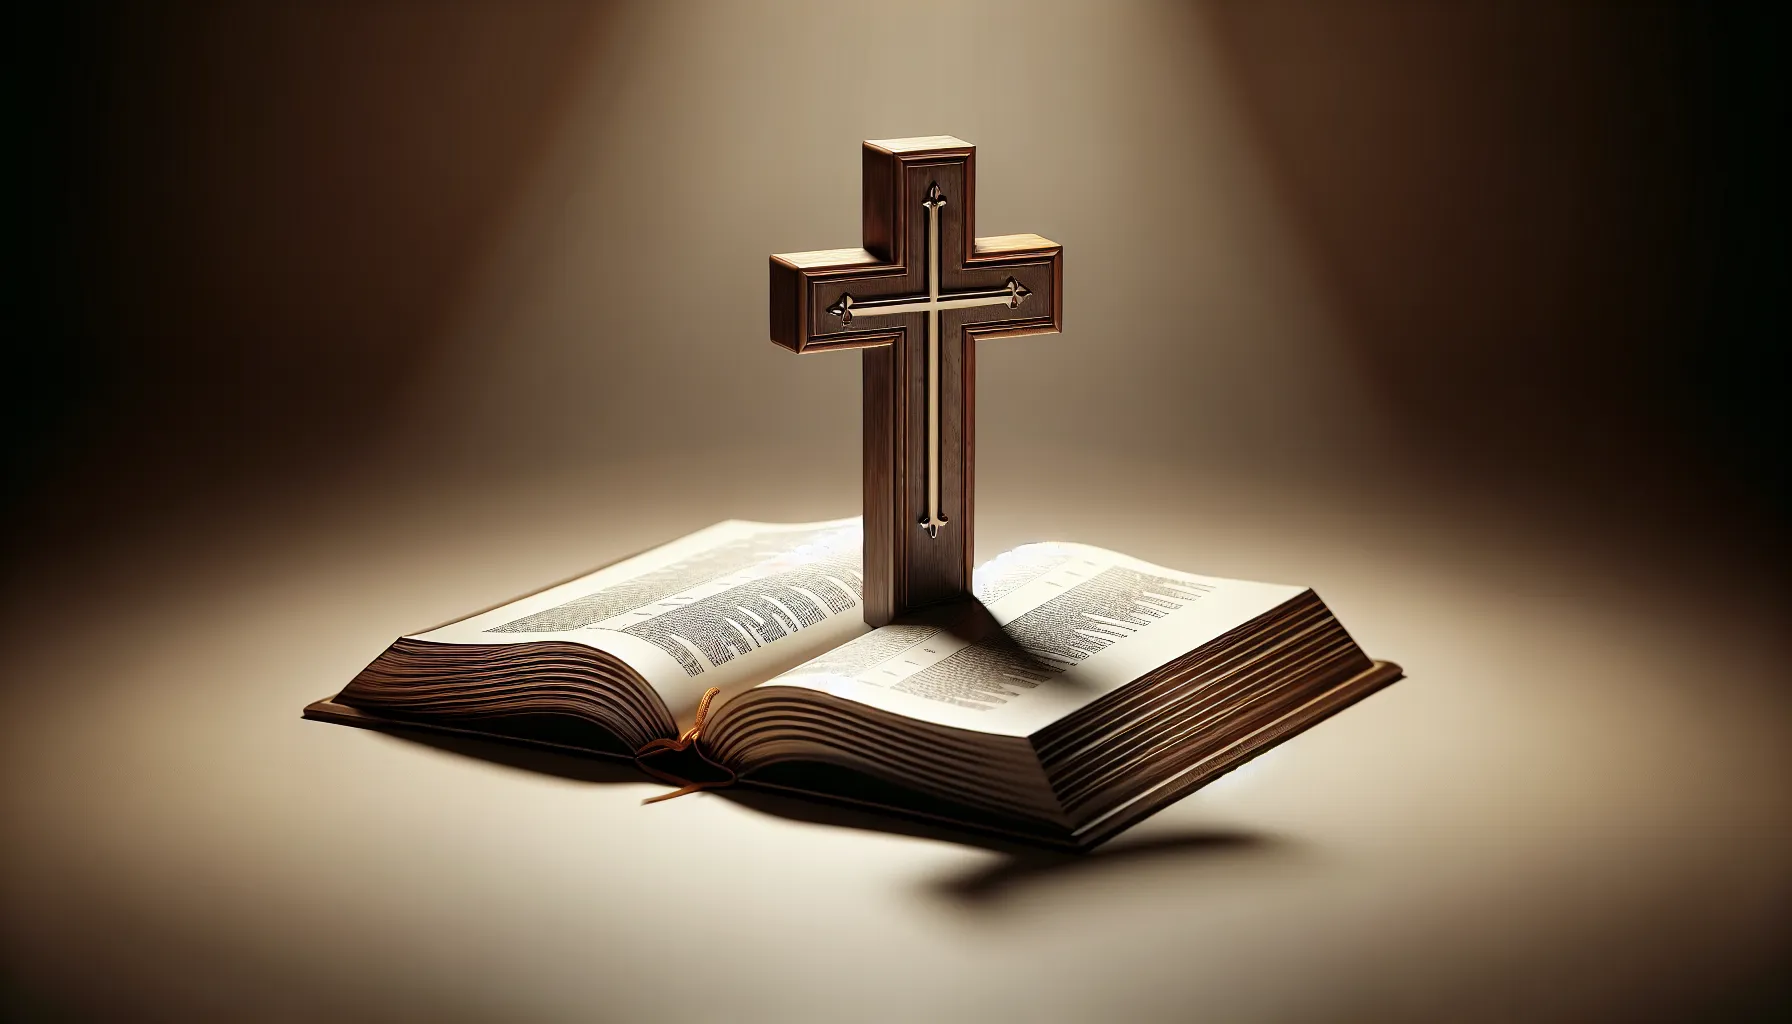 Imagen de un libro abierto con una cruz